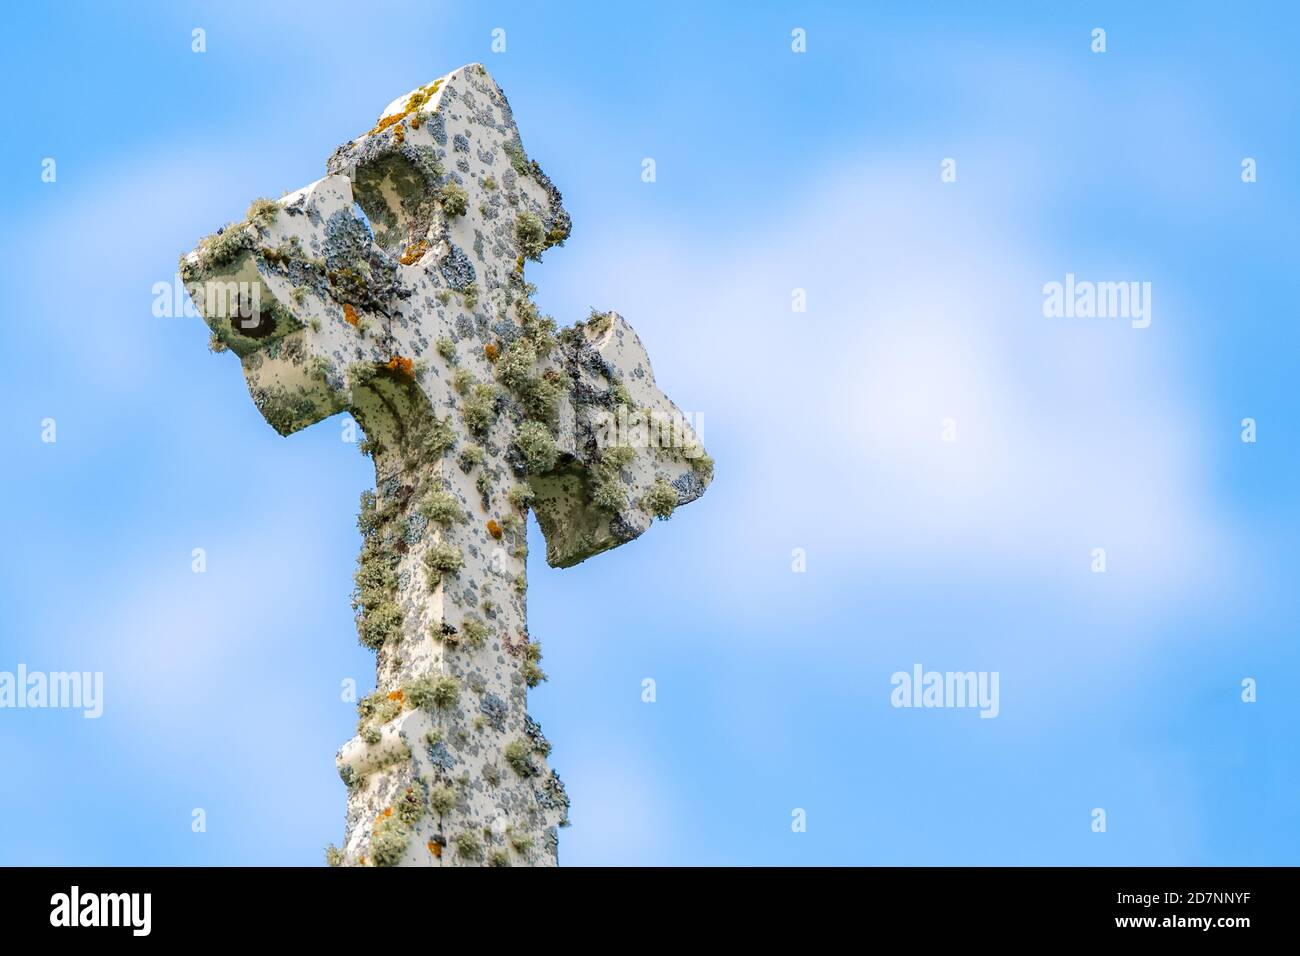 Vue sur une croix de pierre blanche de fantaisie recouverte de mousse et de lichen. Partiellement nuageux bleu timide ci-dessus. Banque D'Images